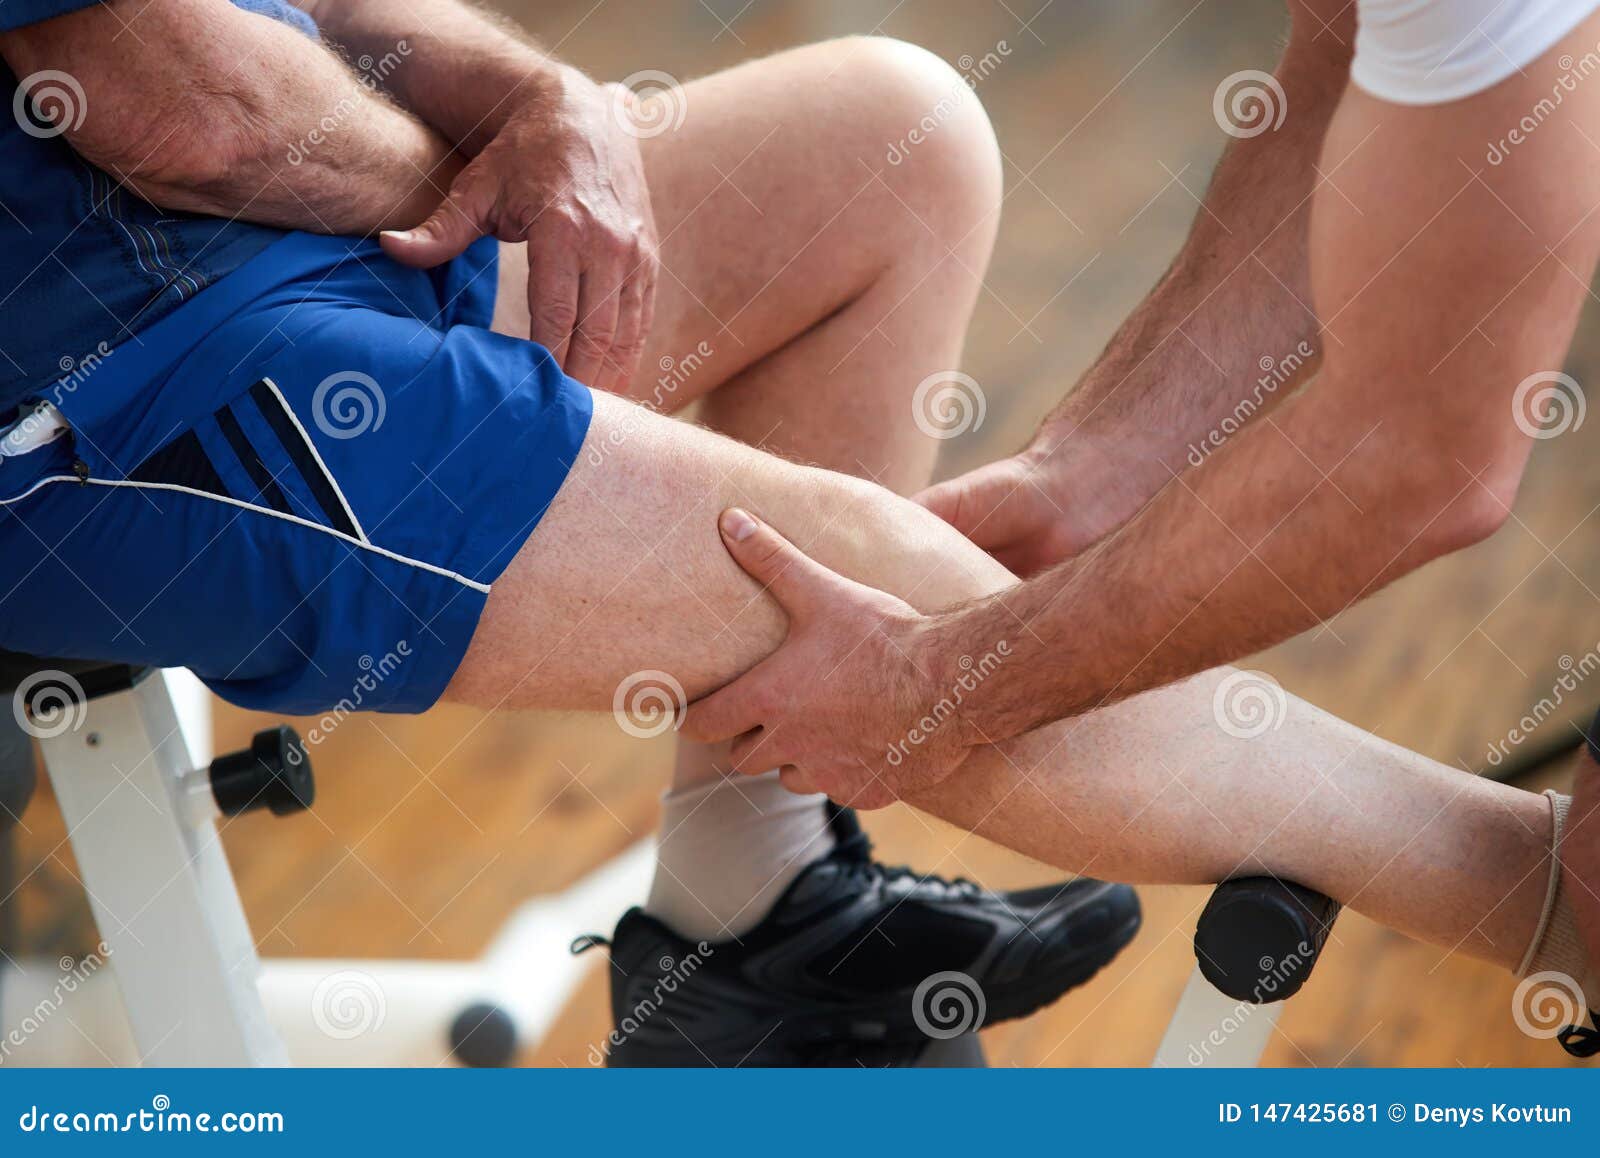 Сильно болят ноги после. Упражнения после травмы голени. Тренировки стопы после травмы. Боль в колене после тренировки. Ноют ноги после тренировки.